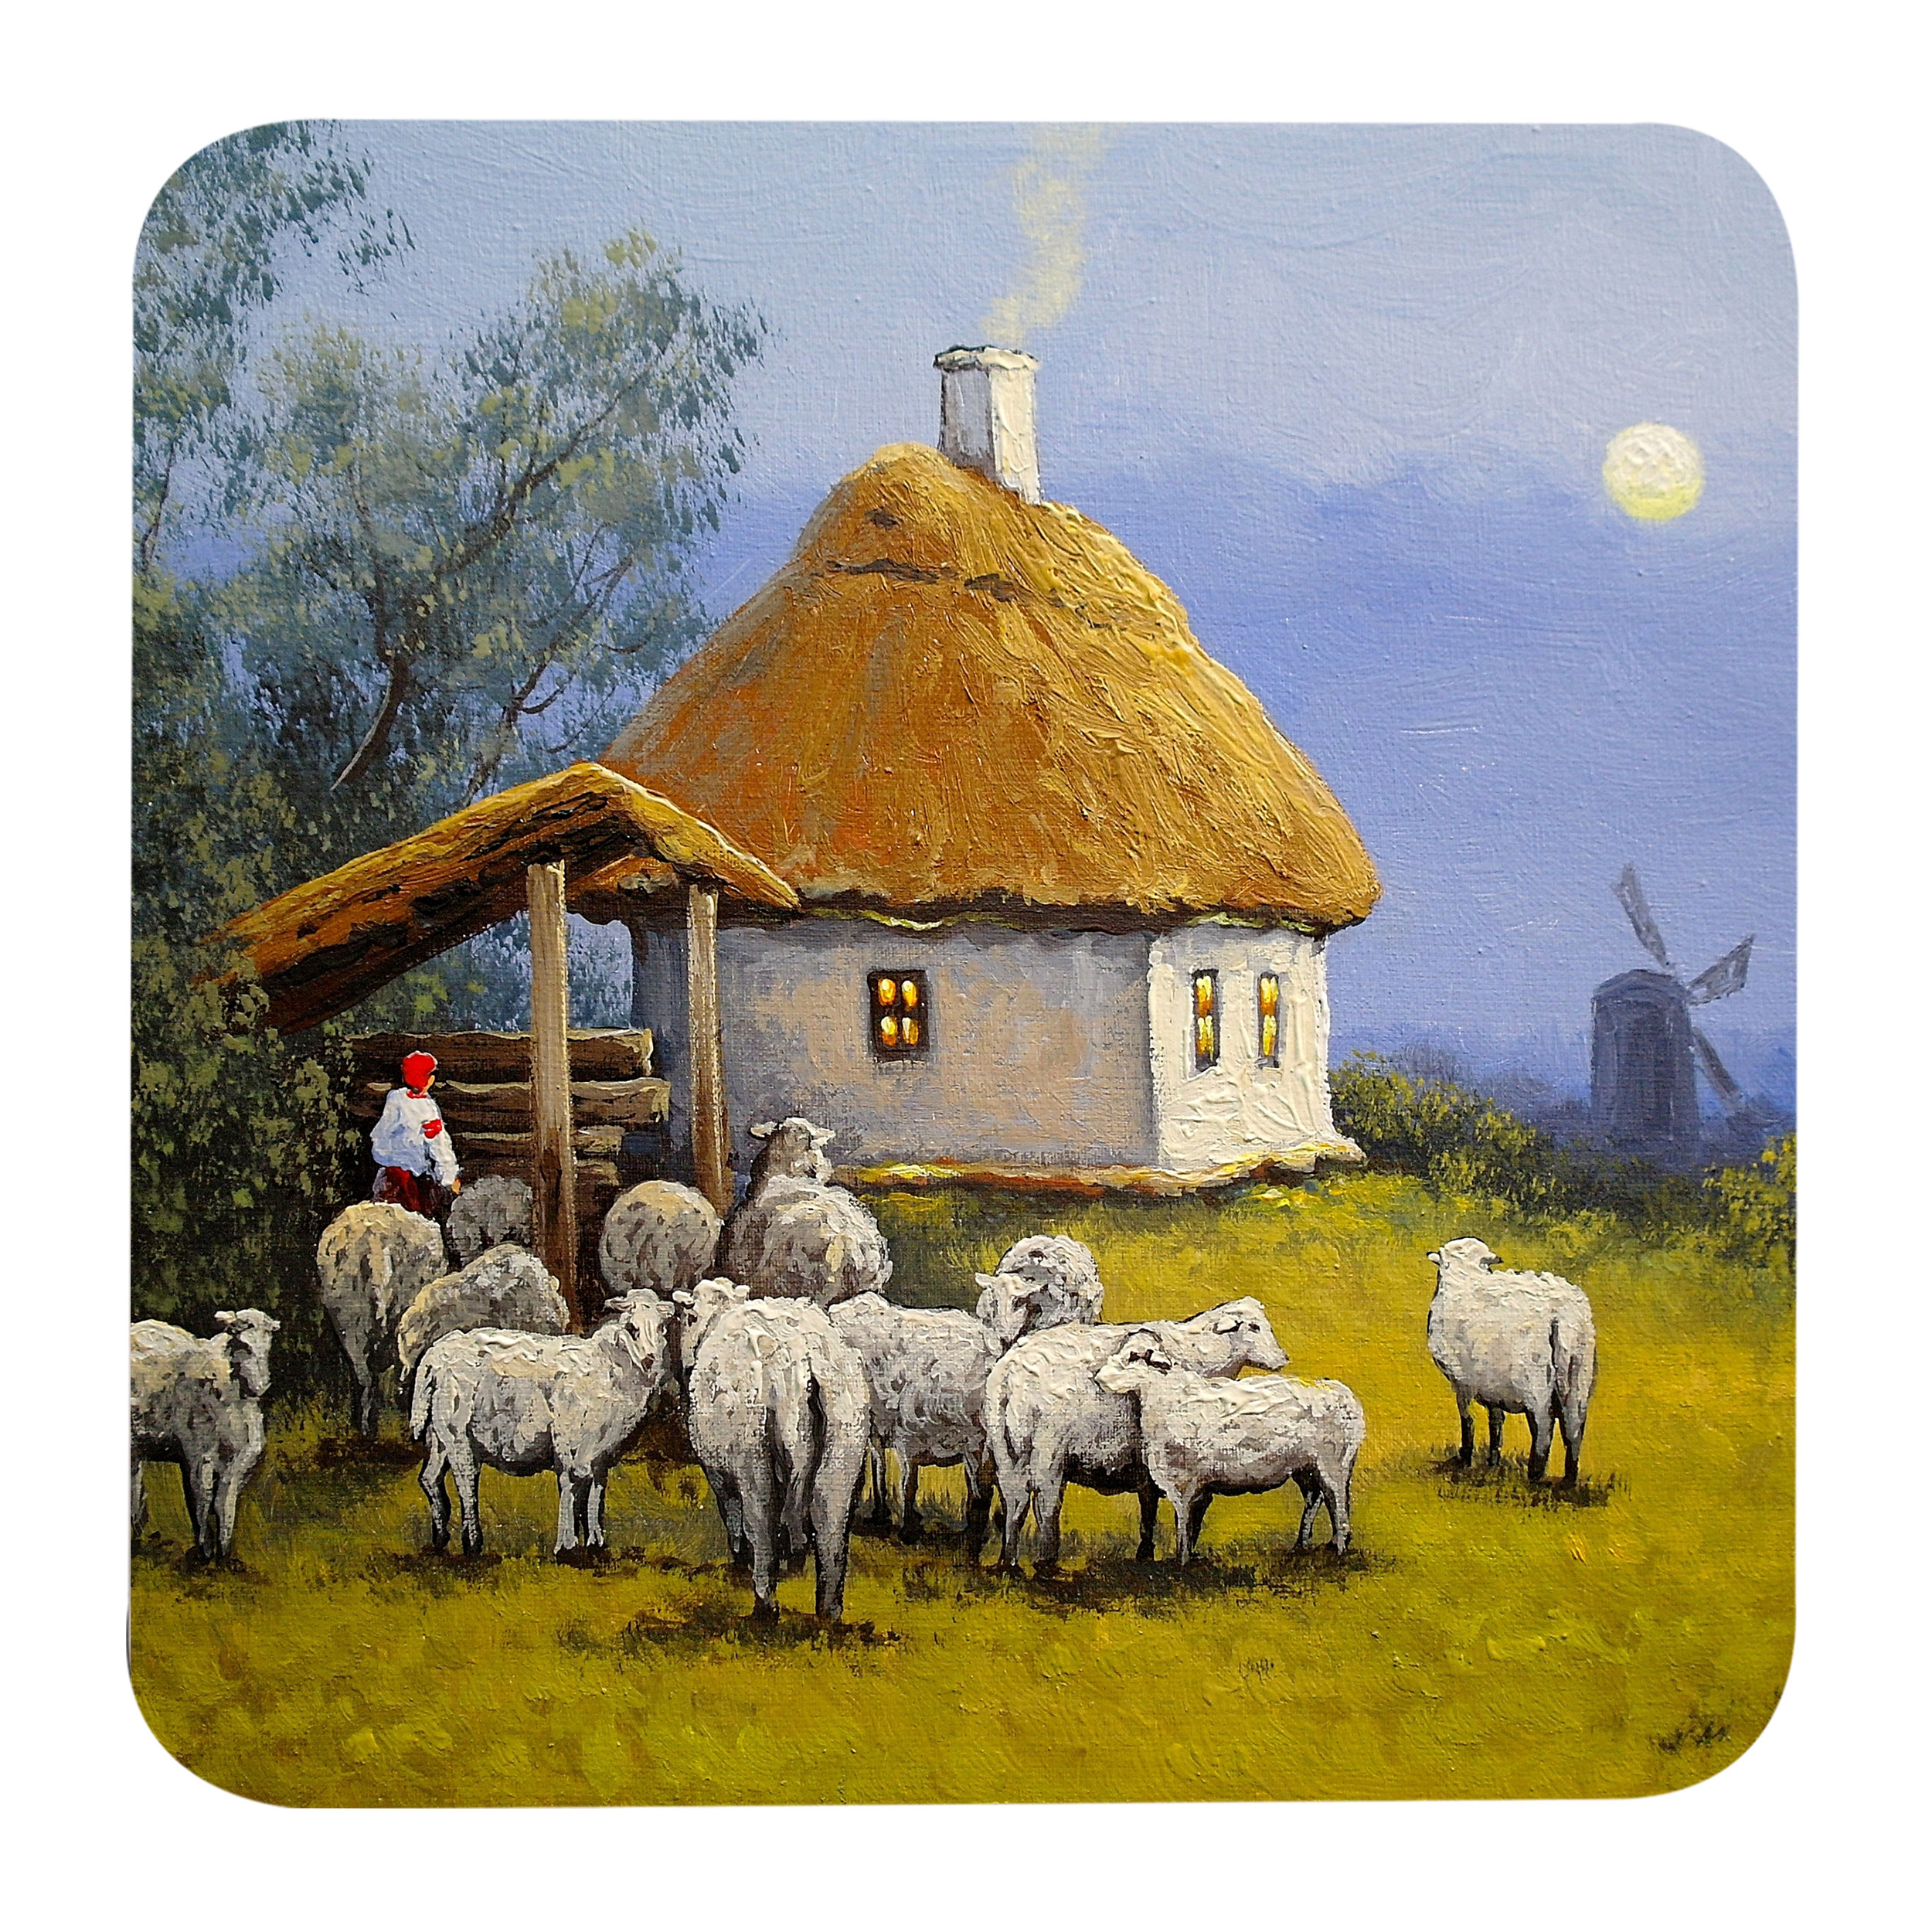 مگنت طرح نقاشی منظره مزرعه آسیاب بادی و کلبه و گله گوسفند کد G1021